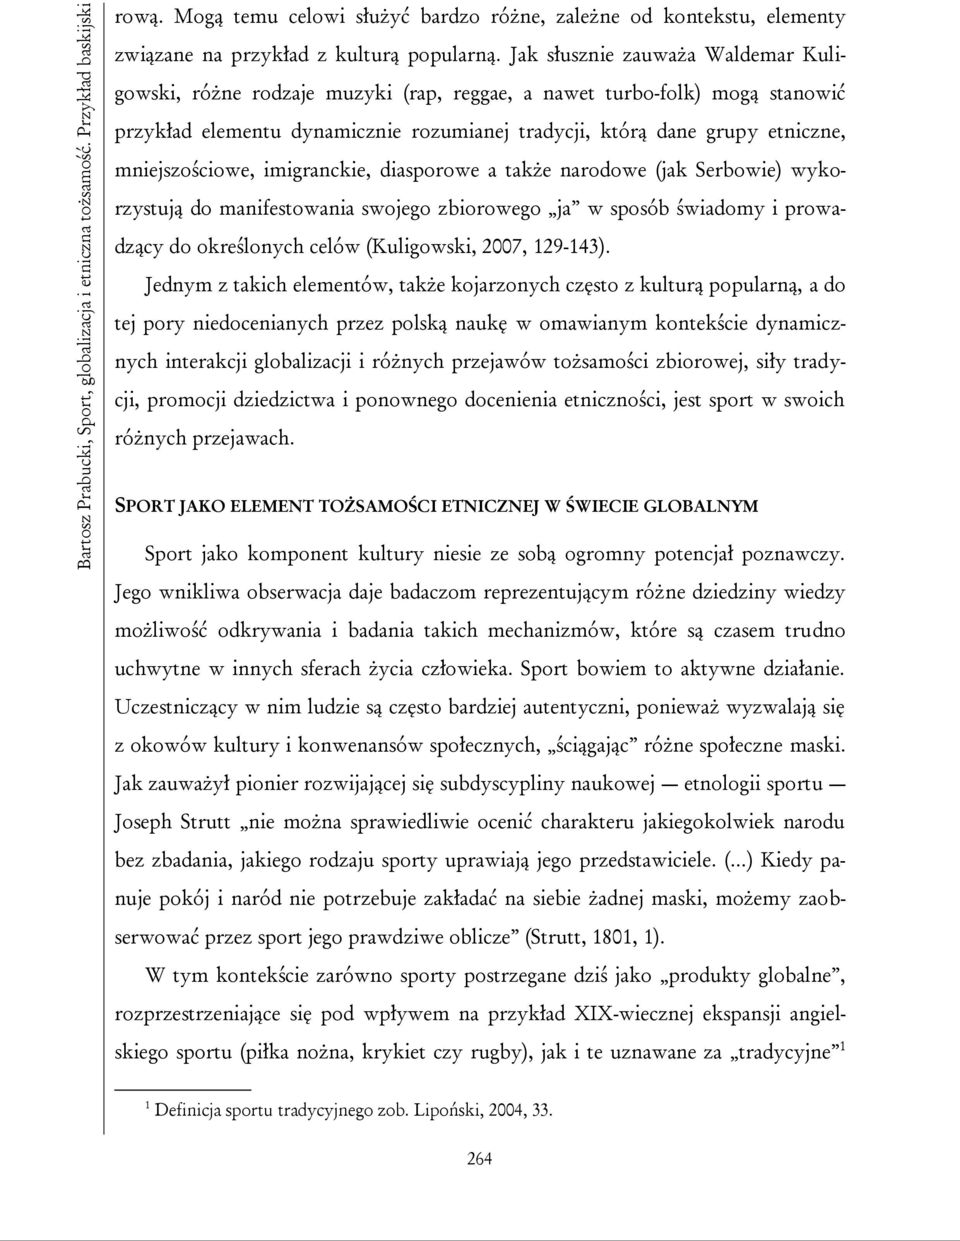 mniejszościowe, imigranckie, diasporowe a także narodowe (jak Serbowie) wykorzystują do manifestowania swojego zbiorowego ja w sposób świadomy i prowadzący do określonych celów (Kuligowski, 2007,